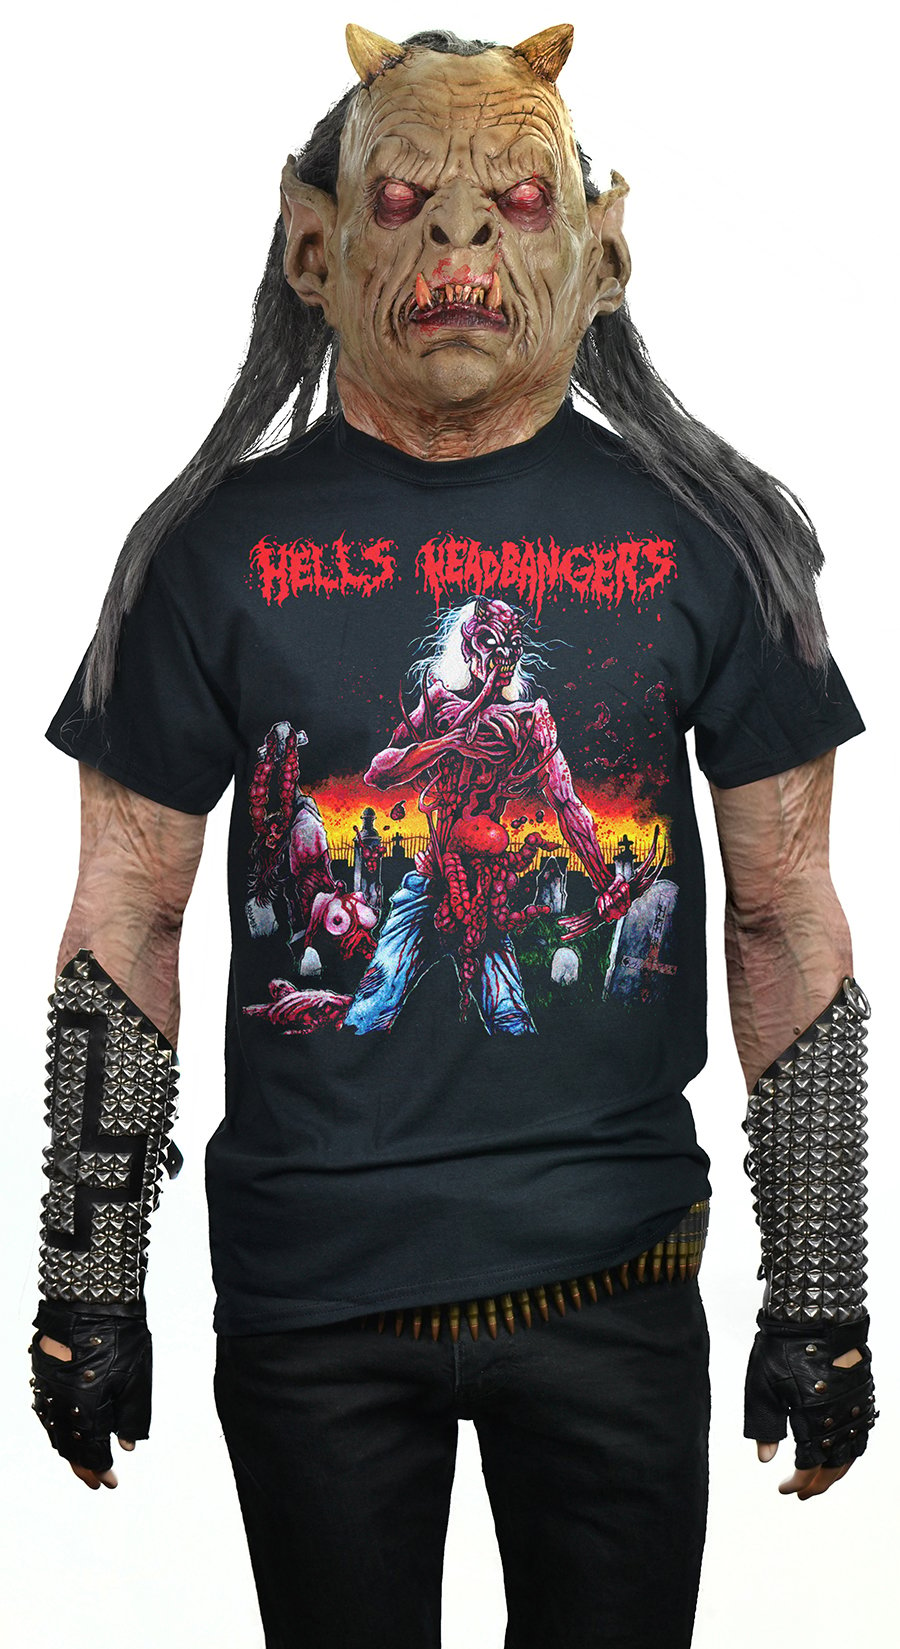 HELLS HEADBANGERS - Skull Full Of Metal (Full Color)